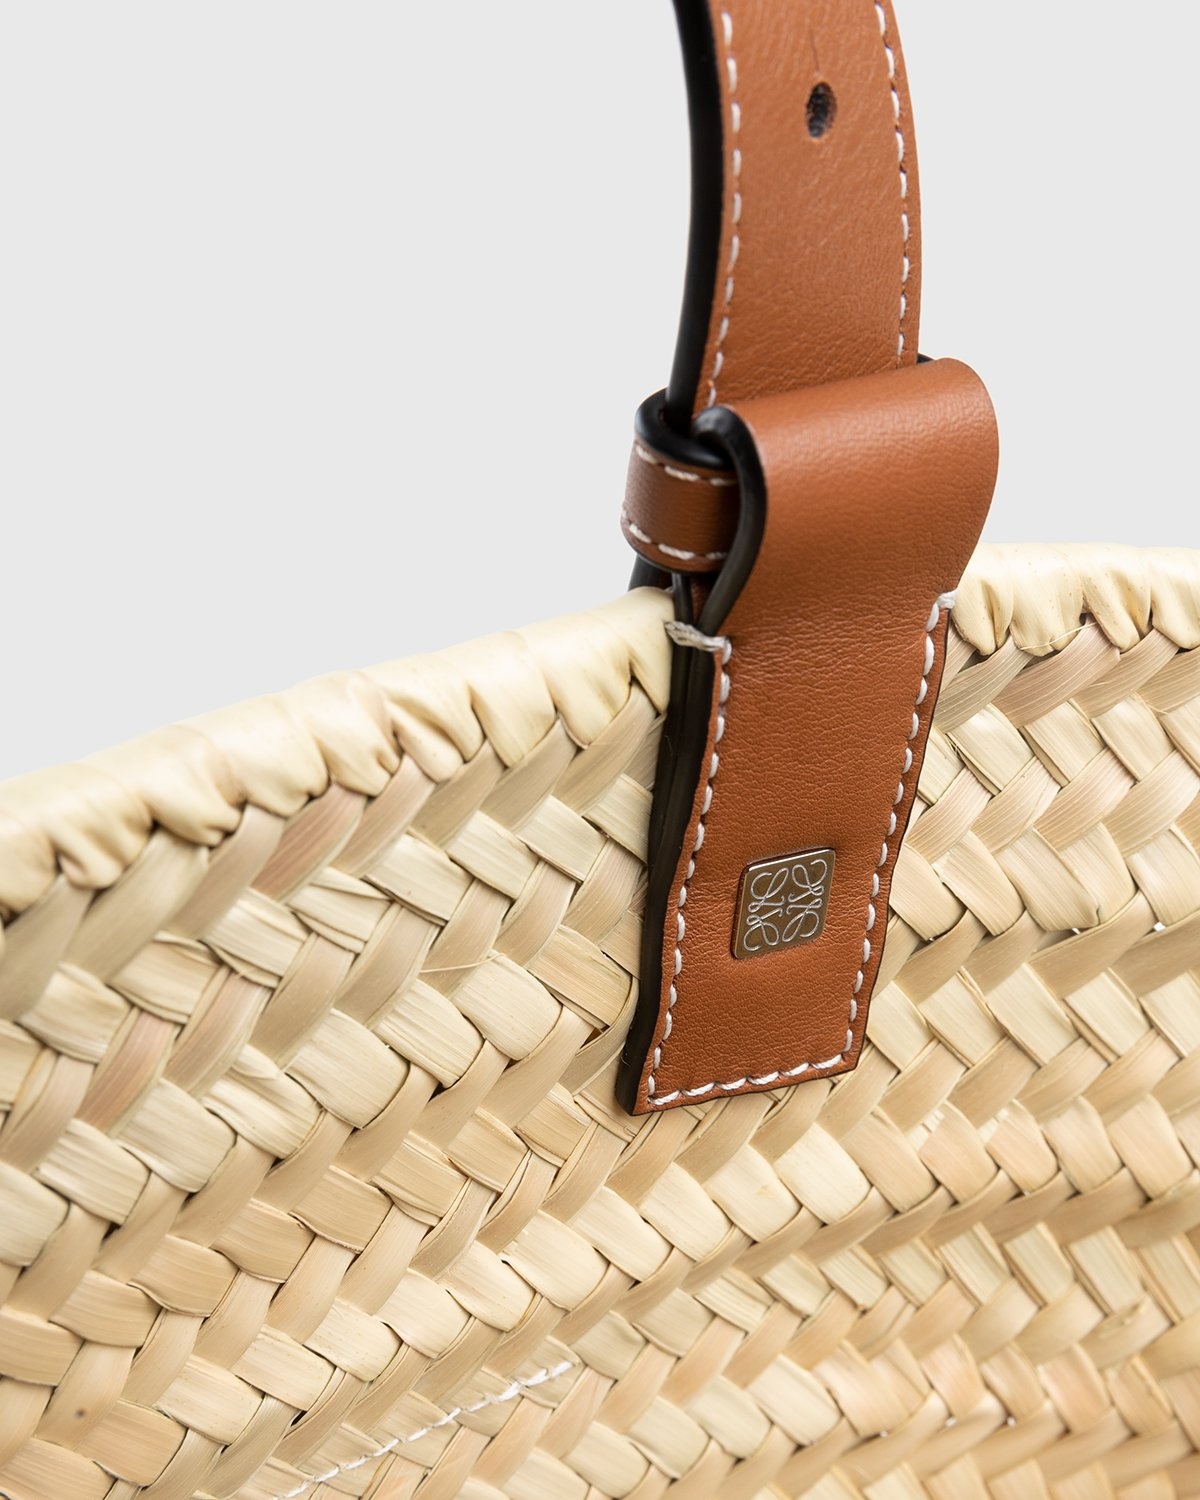 Loewe – Paula's Ibiza Basket Bag Natural/Tan - Shoulder Bags - Beige - Image 4